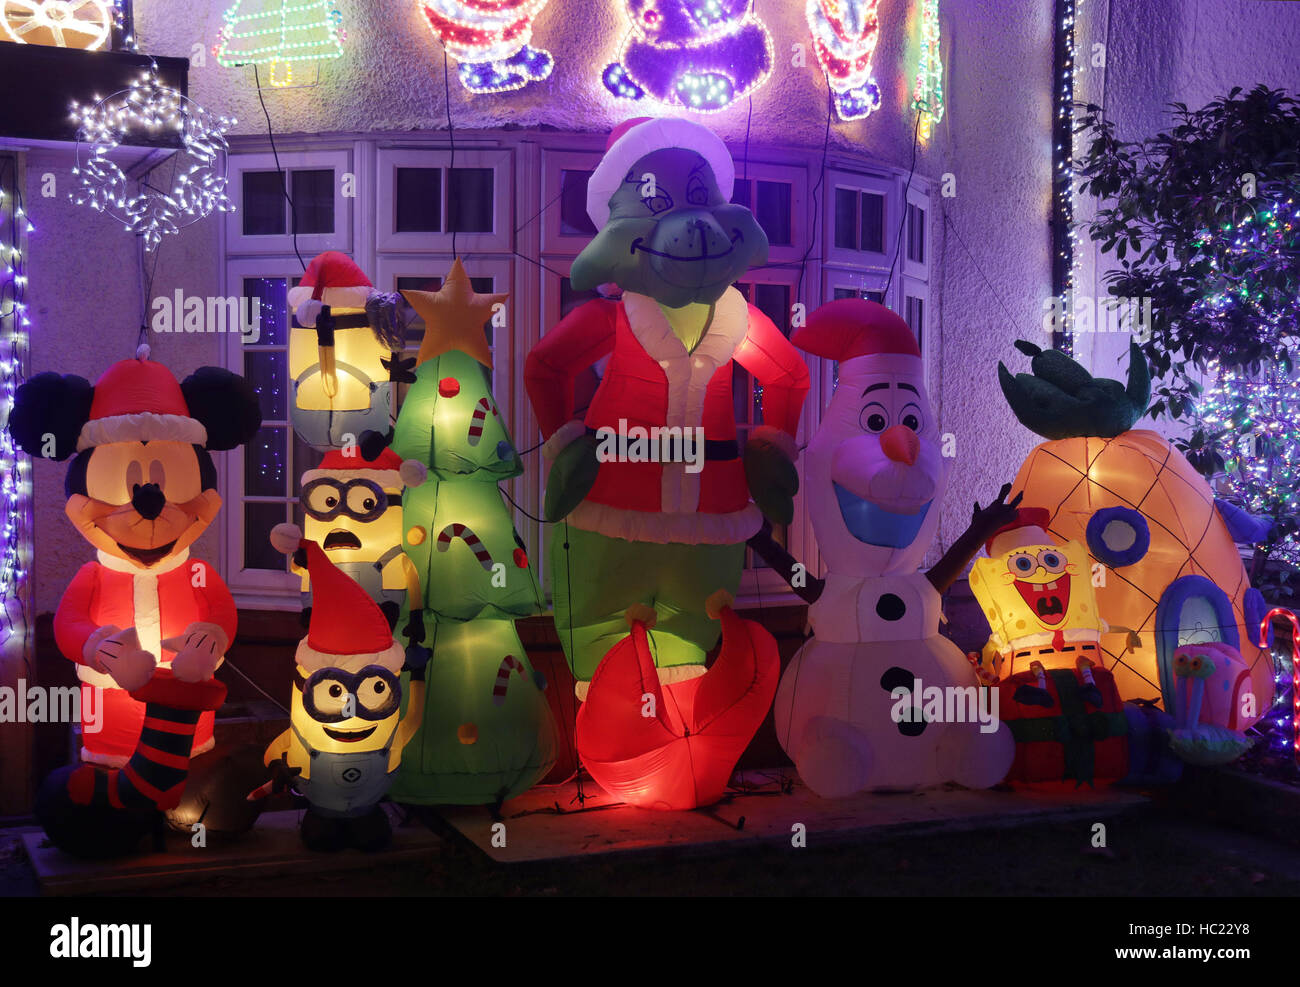 Un quartier résidentiel maison décorée avec des lumières de Noël et de fête des personnages de dessins animés à Highgate, au nord de Londres. Banque D'Images